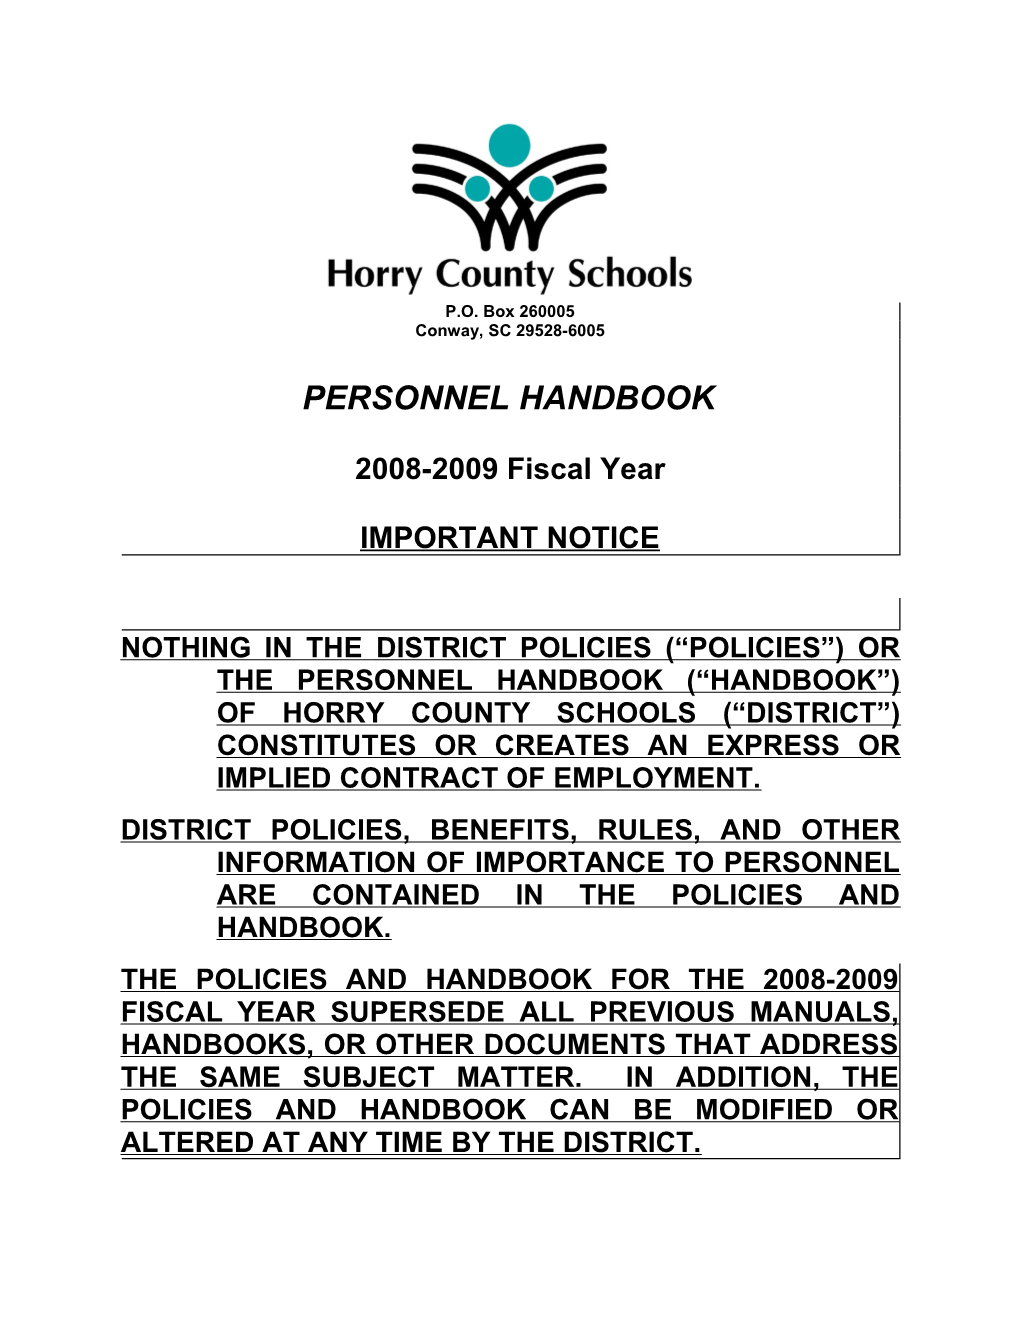 Horry County Schoolspersonnel Handbook, 2008-2009